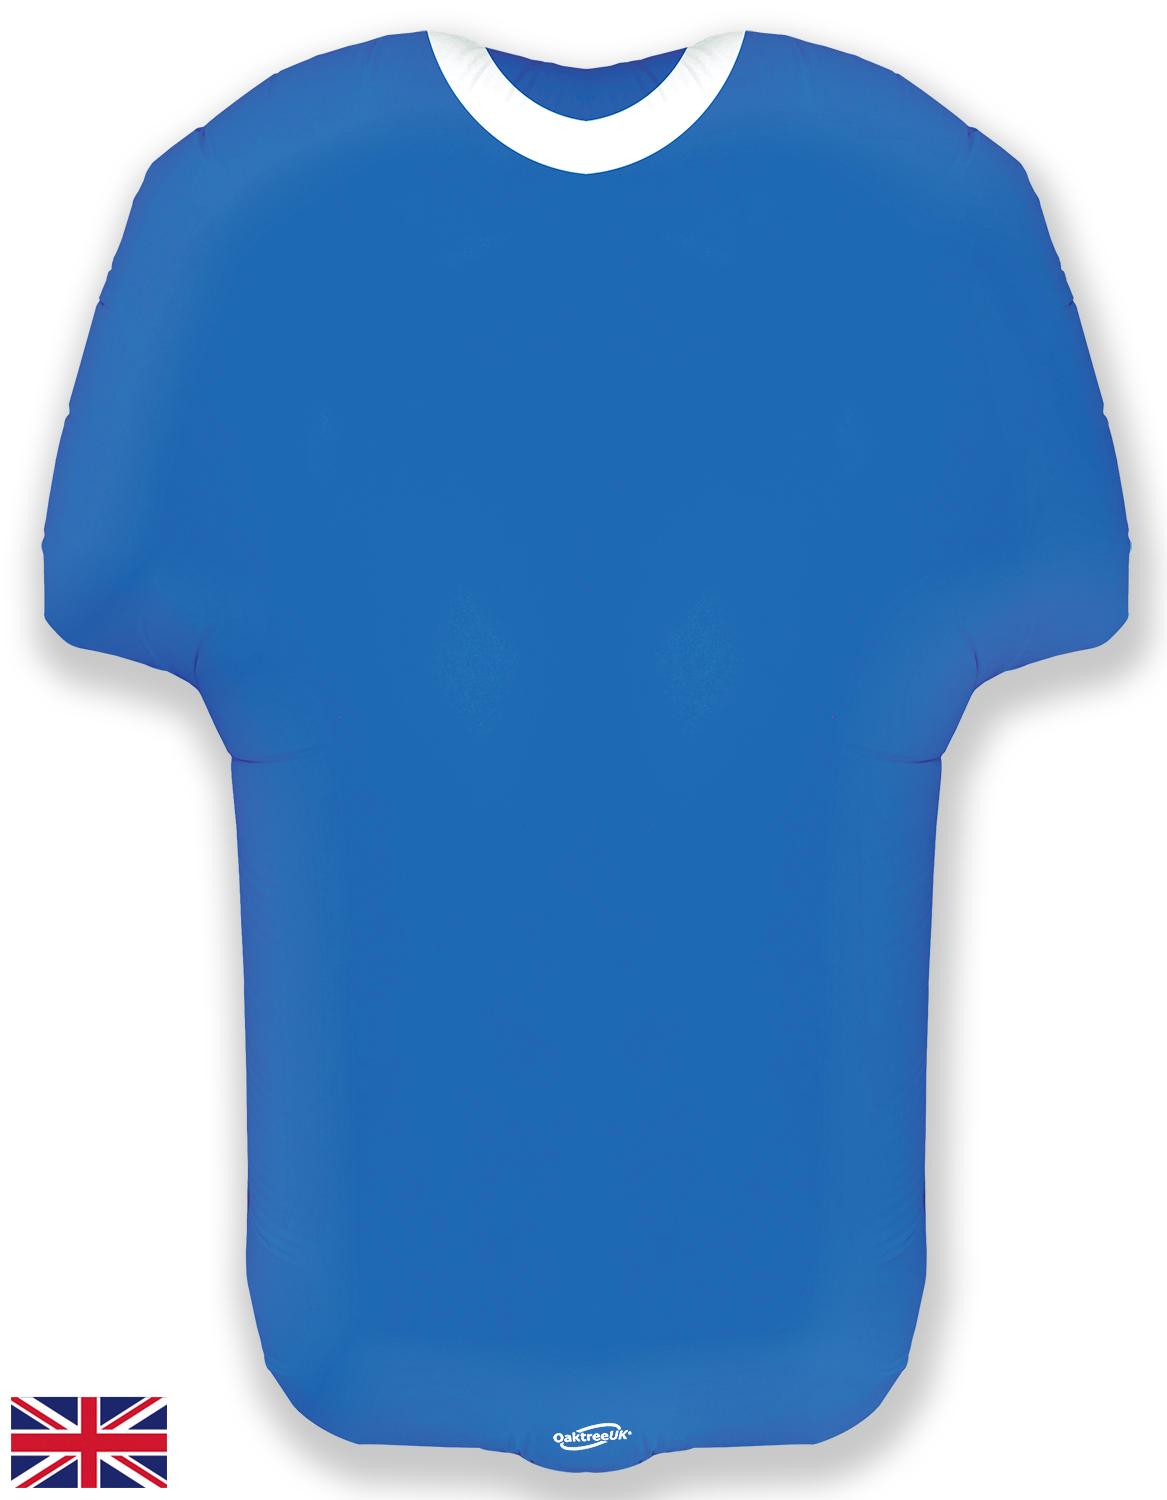 24'' Blue Sport Shirt / Football Shirt Foil Balloon